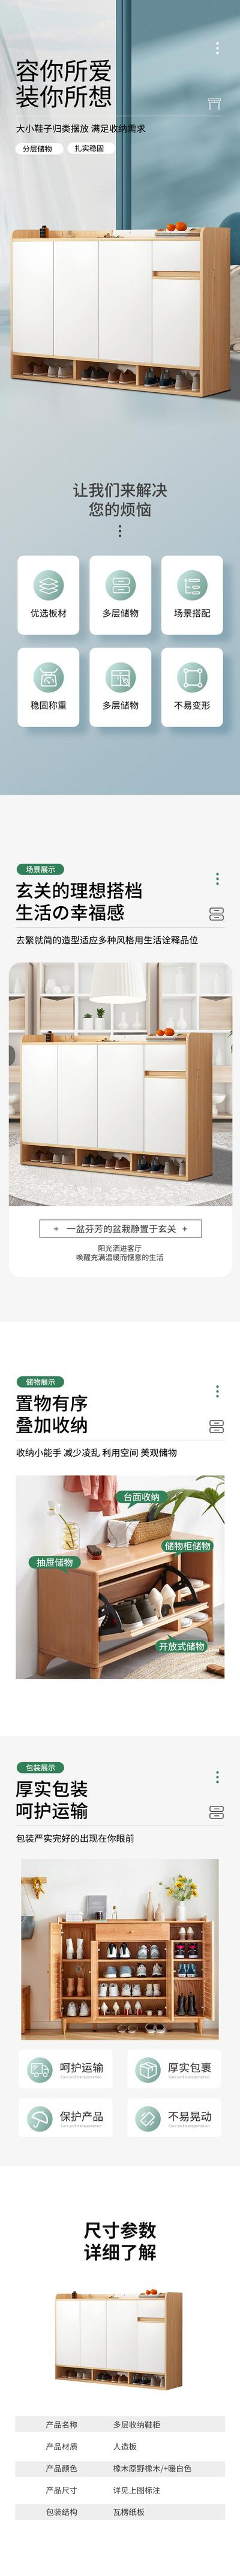 南门网 广告 海报 电商 鞋柜 详情页 家具